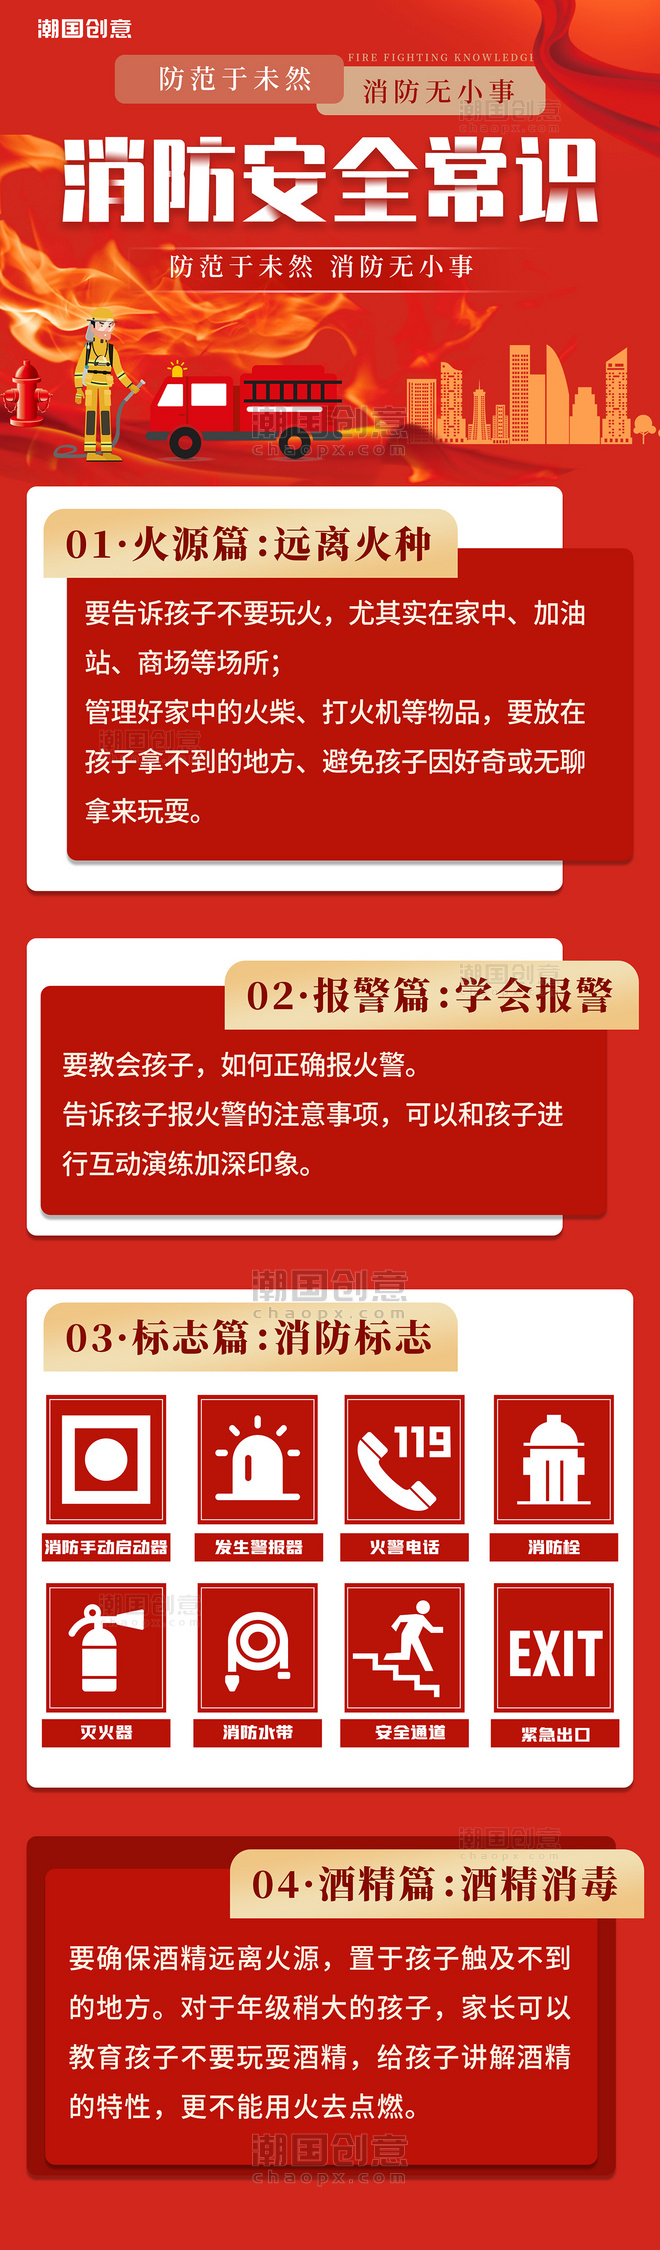 11月9日全国消防安全日消防安全常识科普宣传红色H5长图